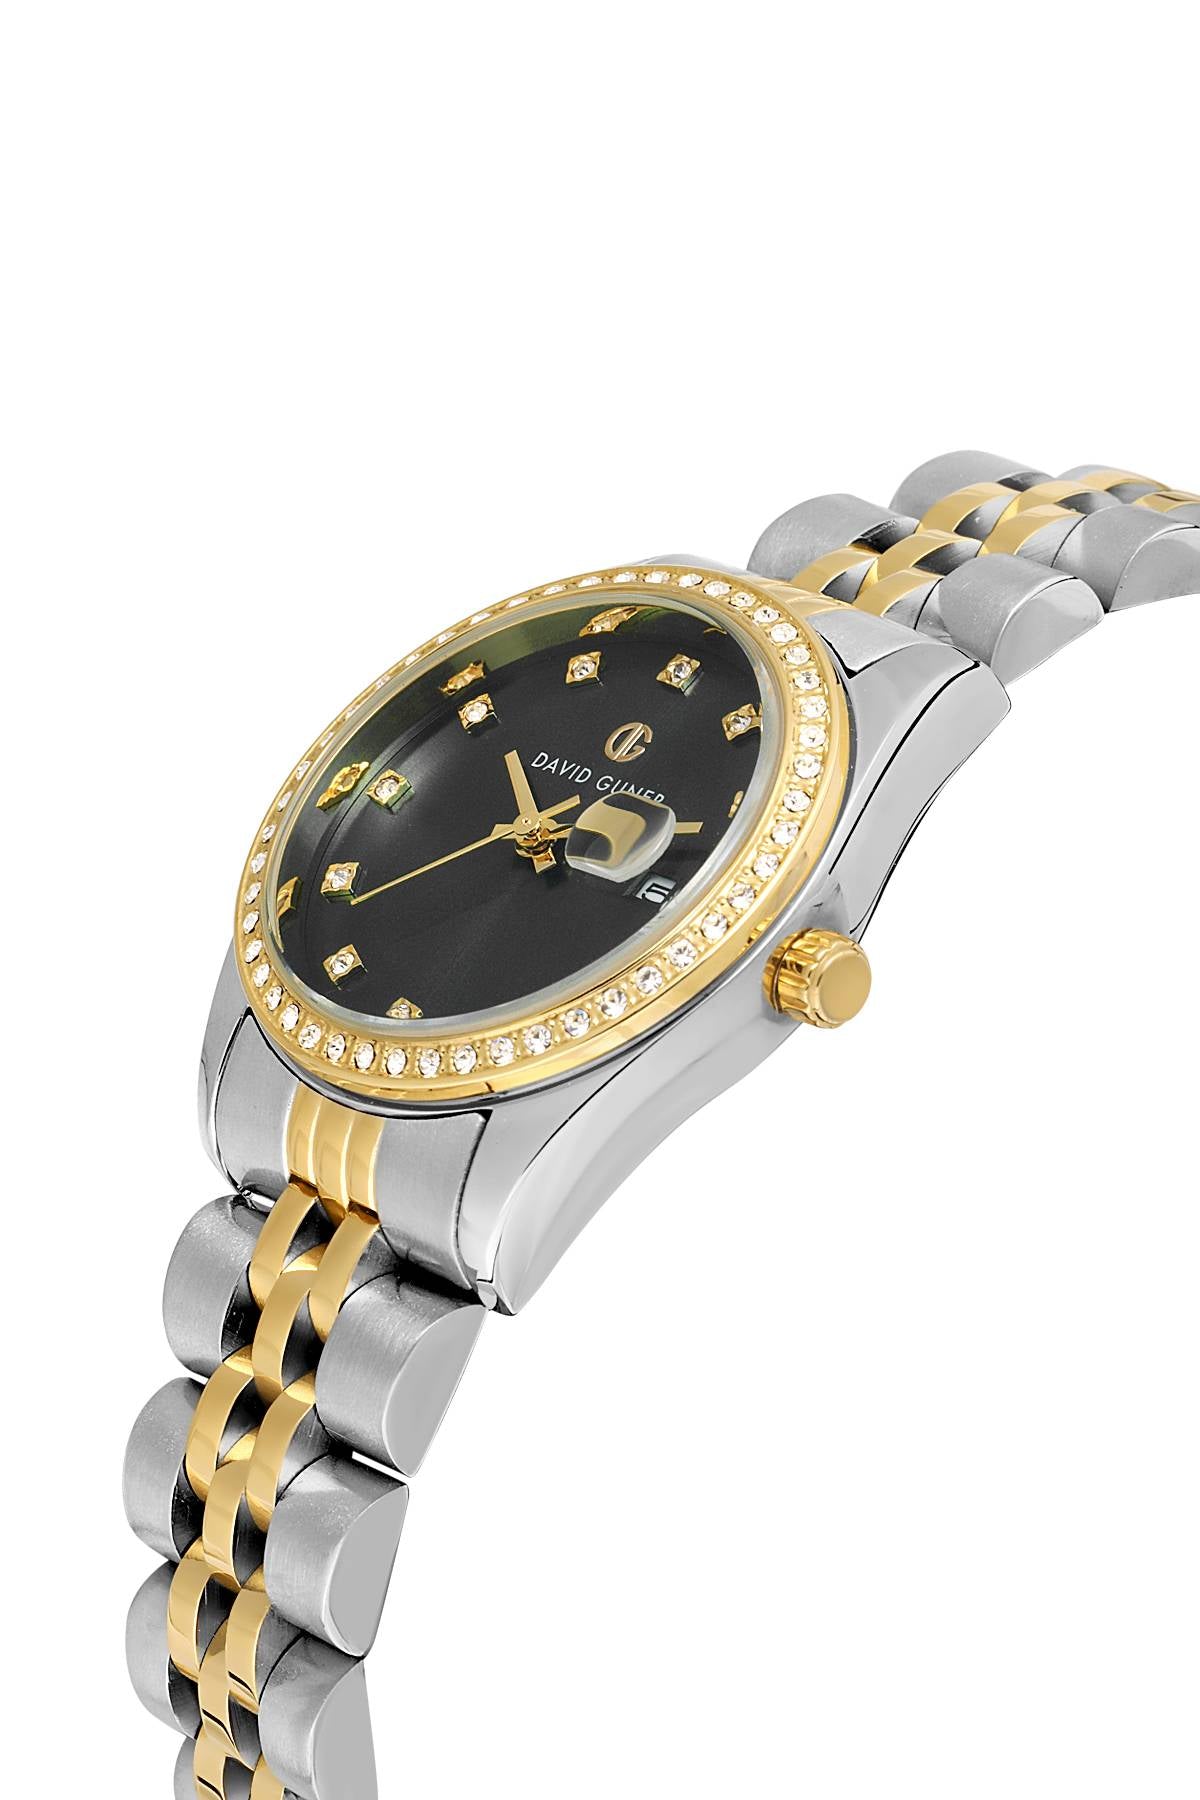 David Guner Silver Dial Calendar Women's Wristwatch